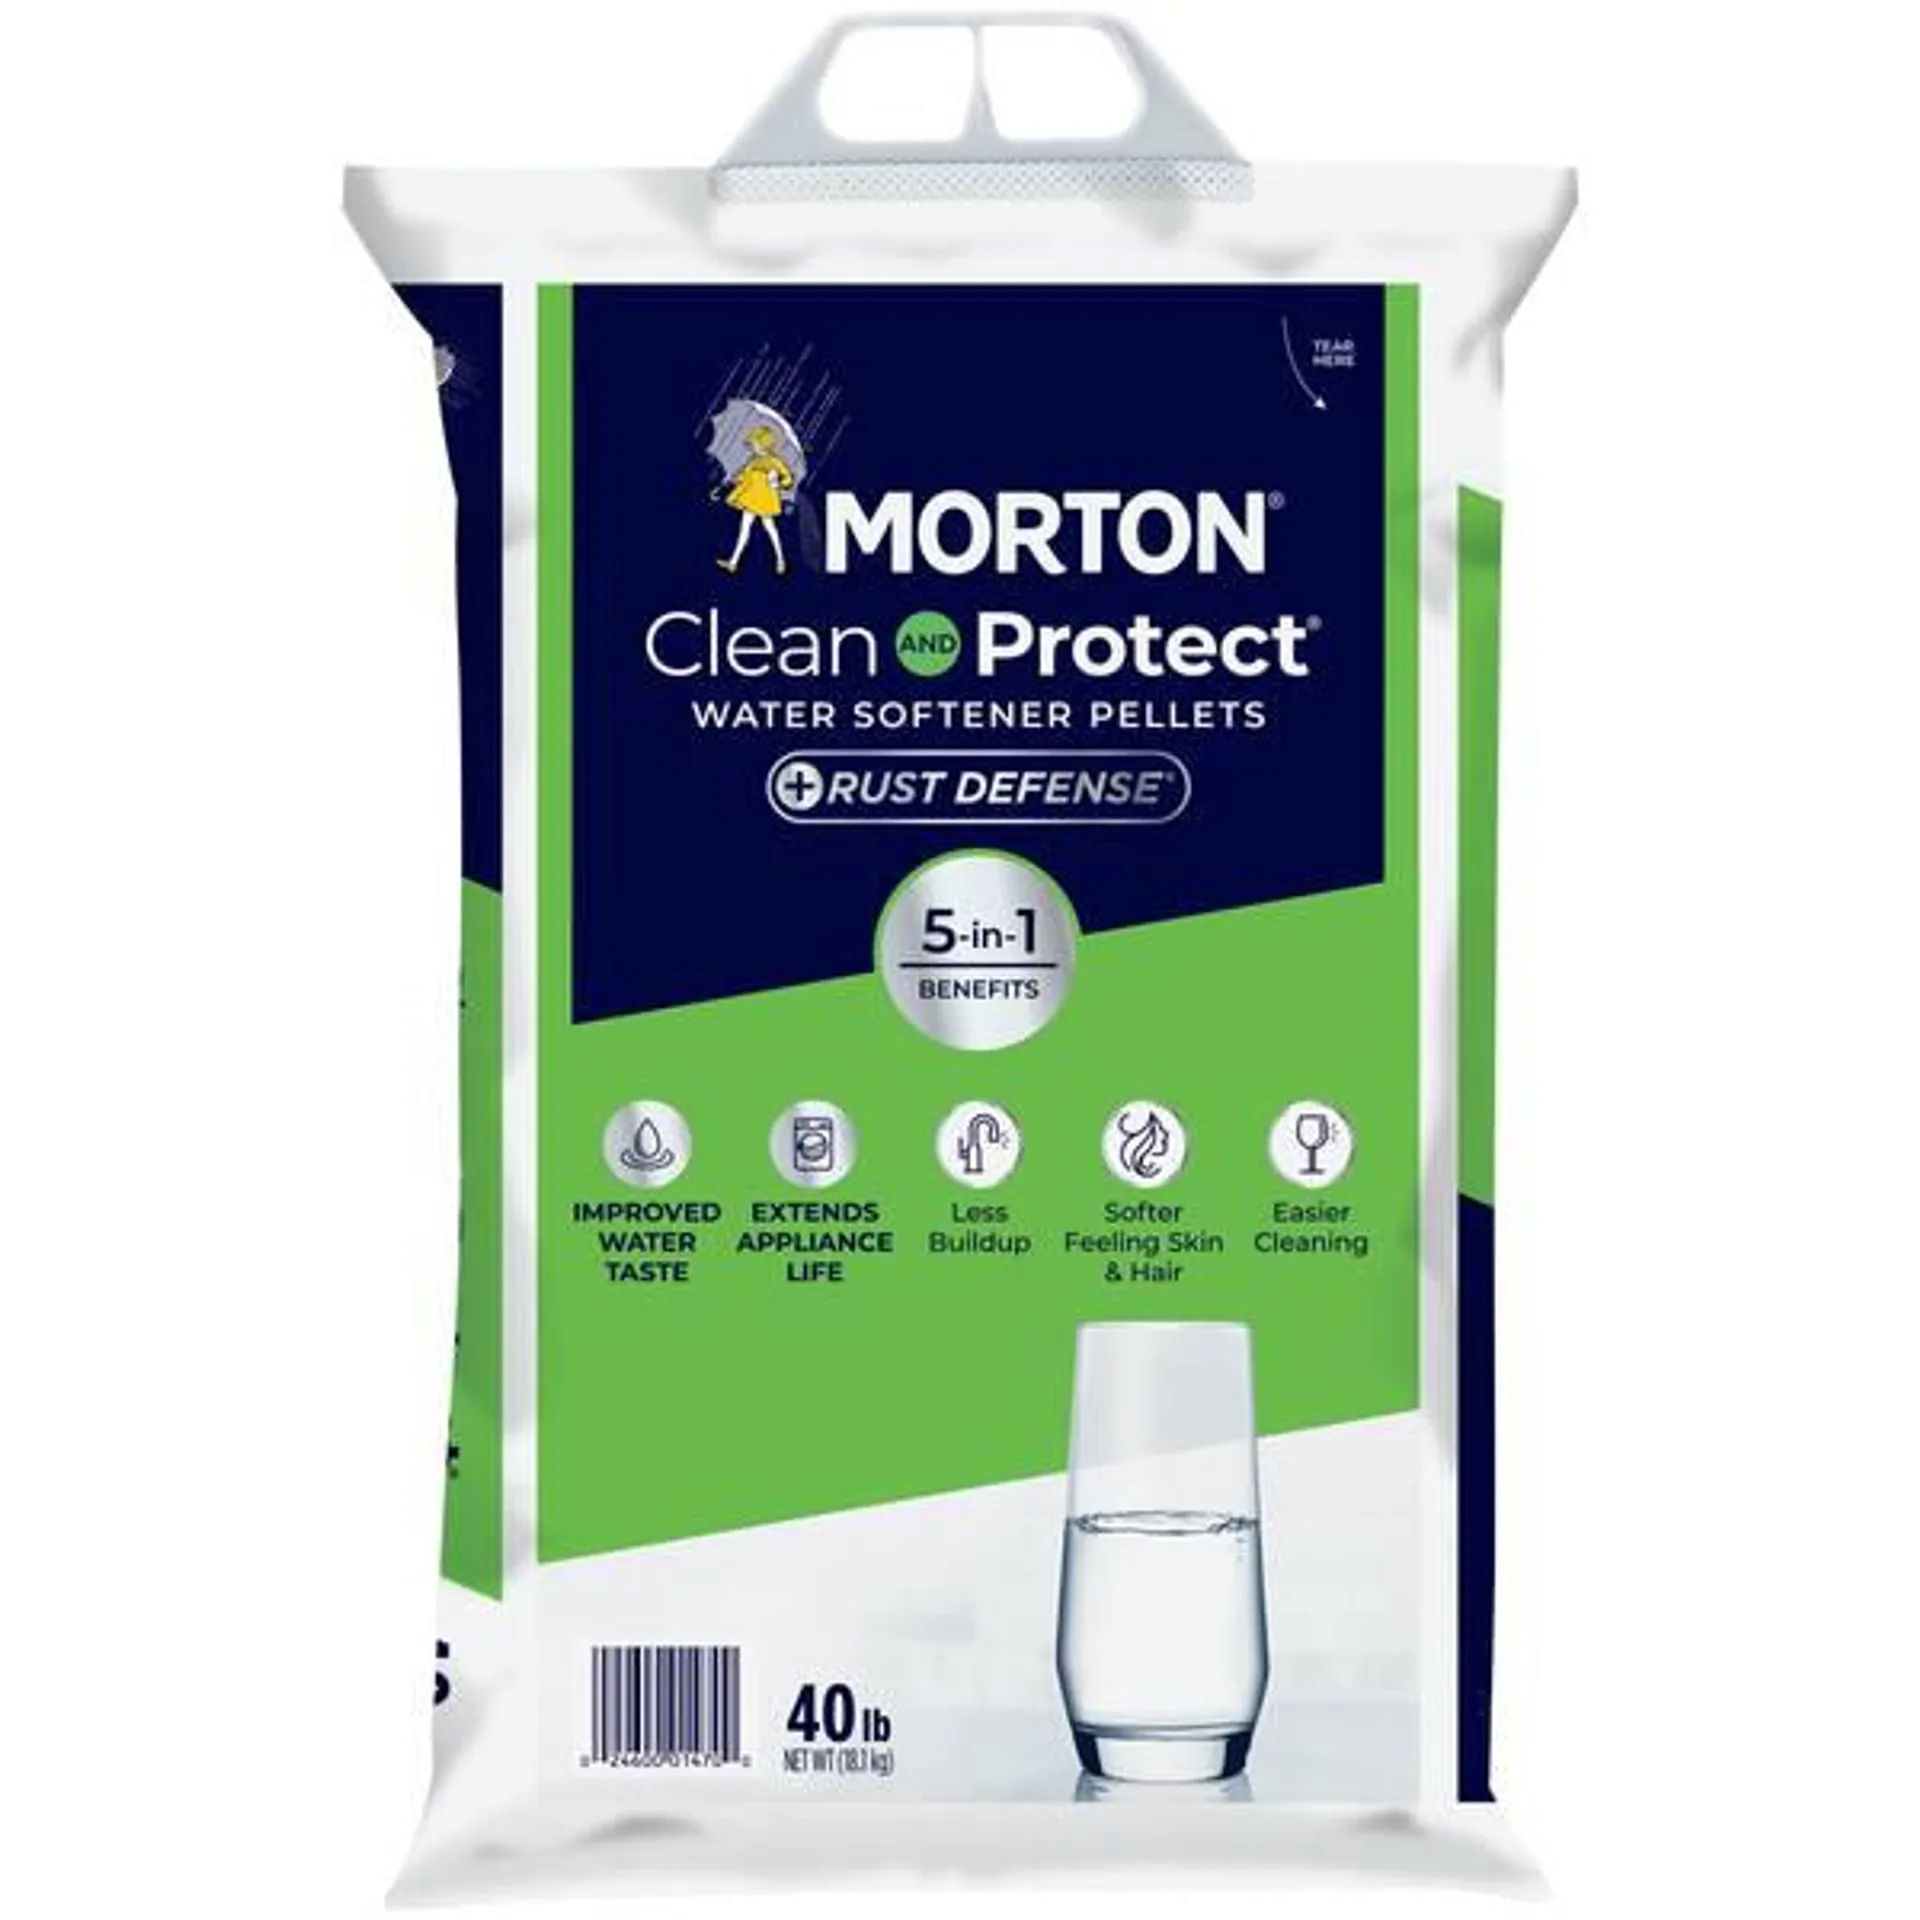 40 lb Clean and Protect Plus Rust Defense Water Softener Salt Pellet Bag